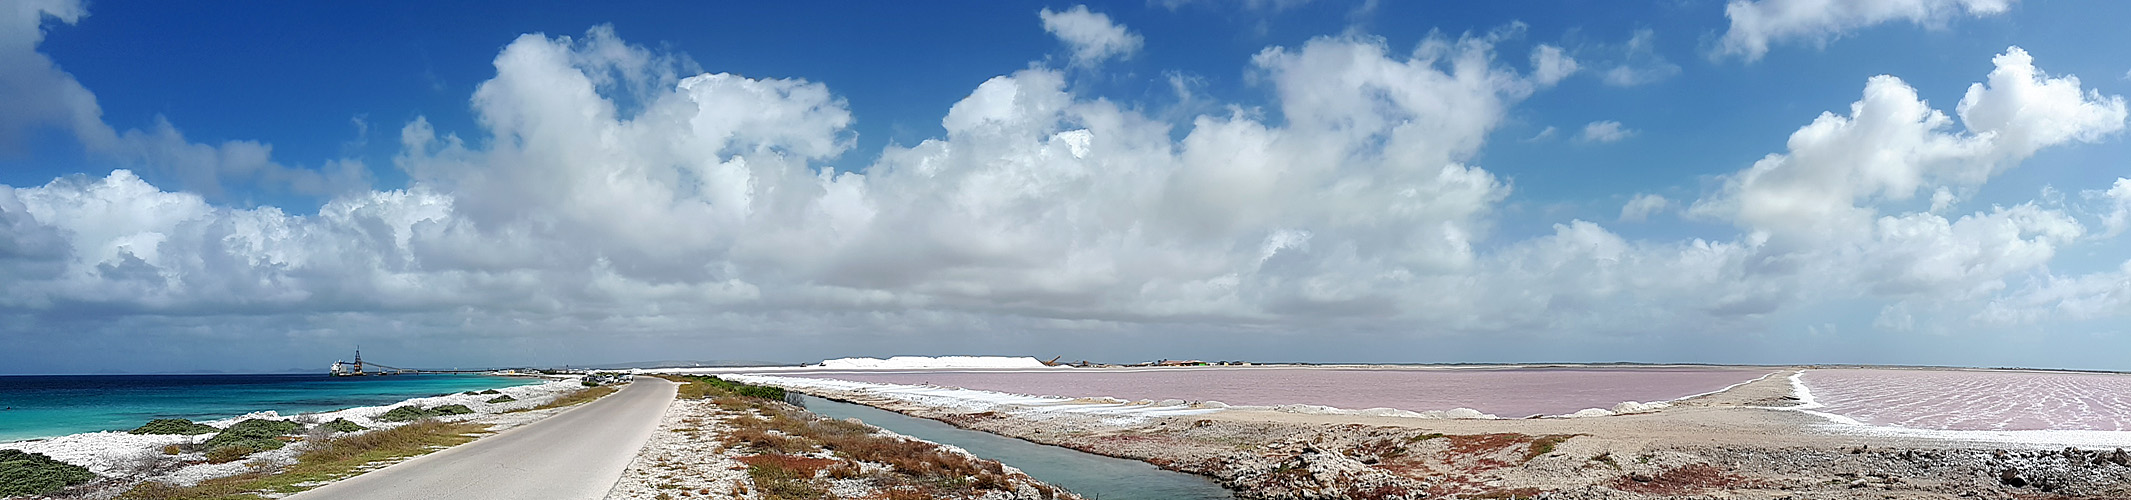 BONAIRE - photo panoramique des salines (sud de l île)